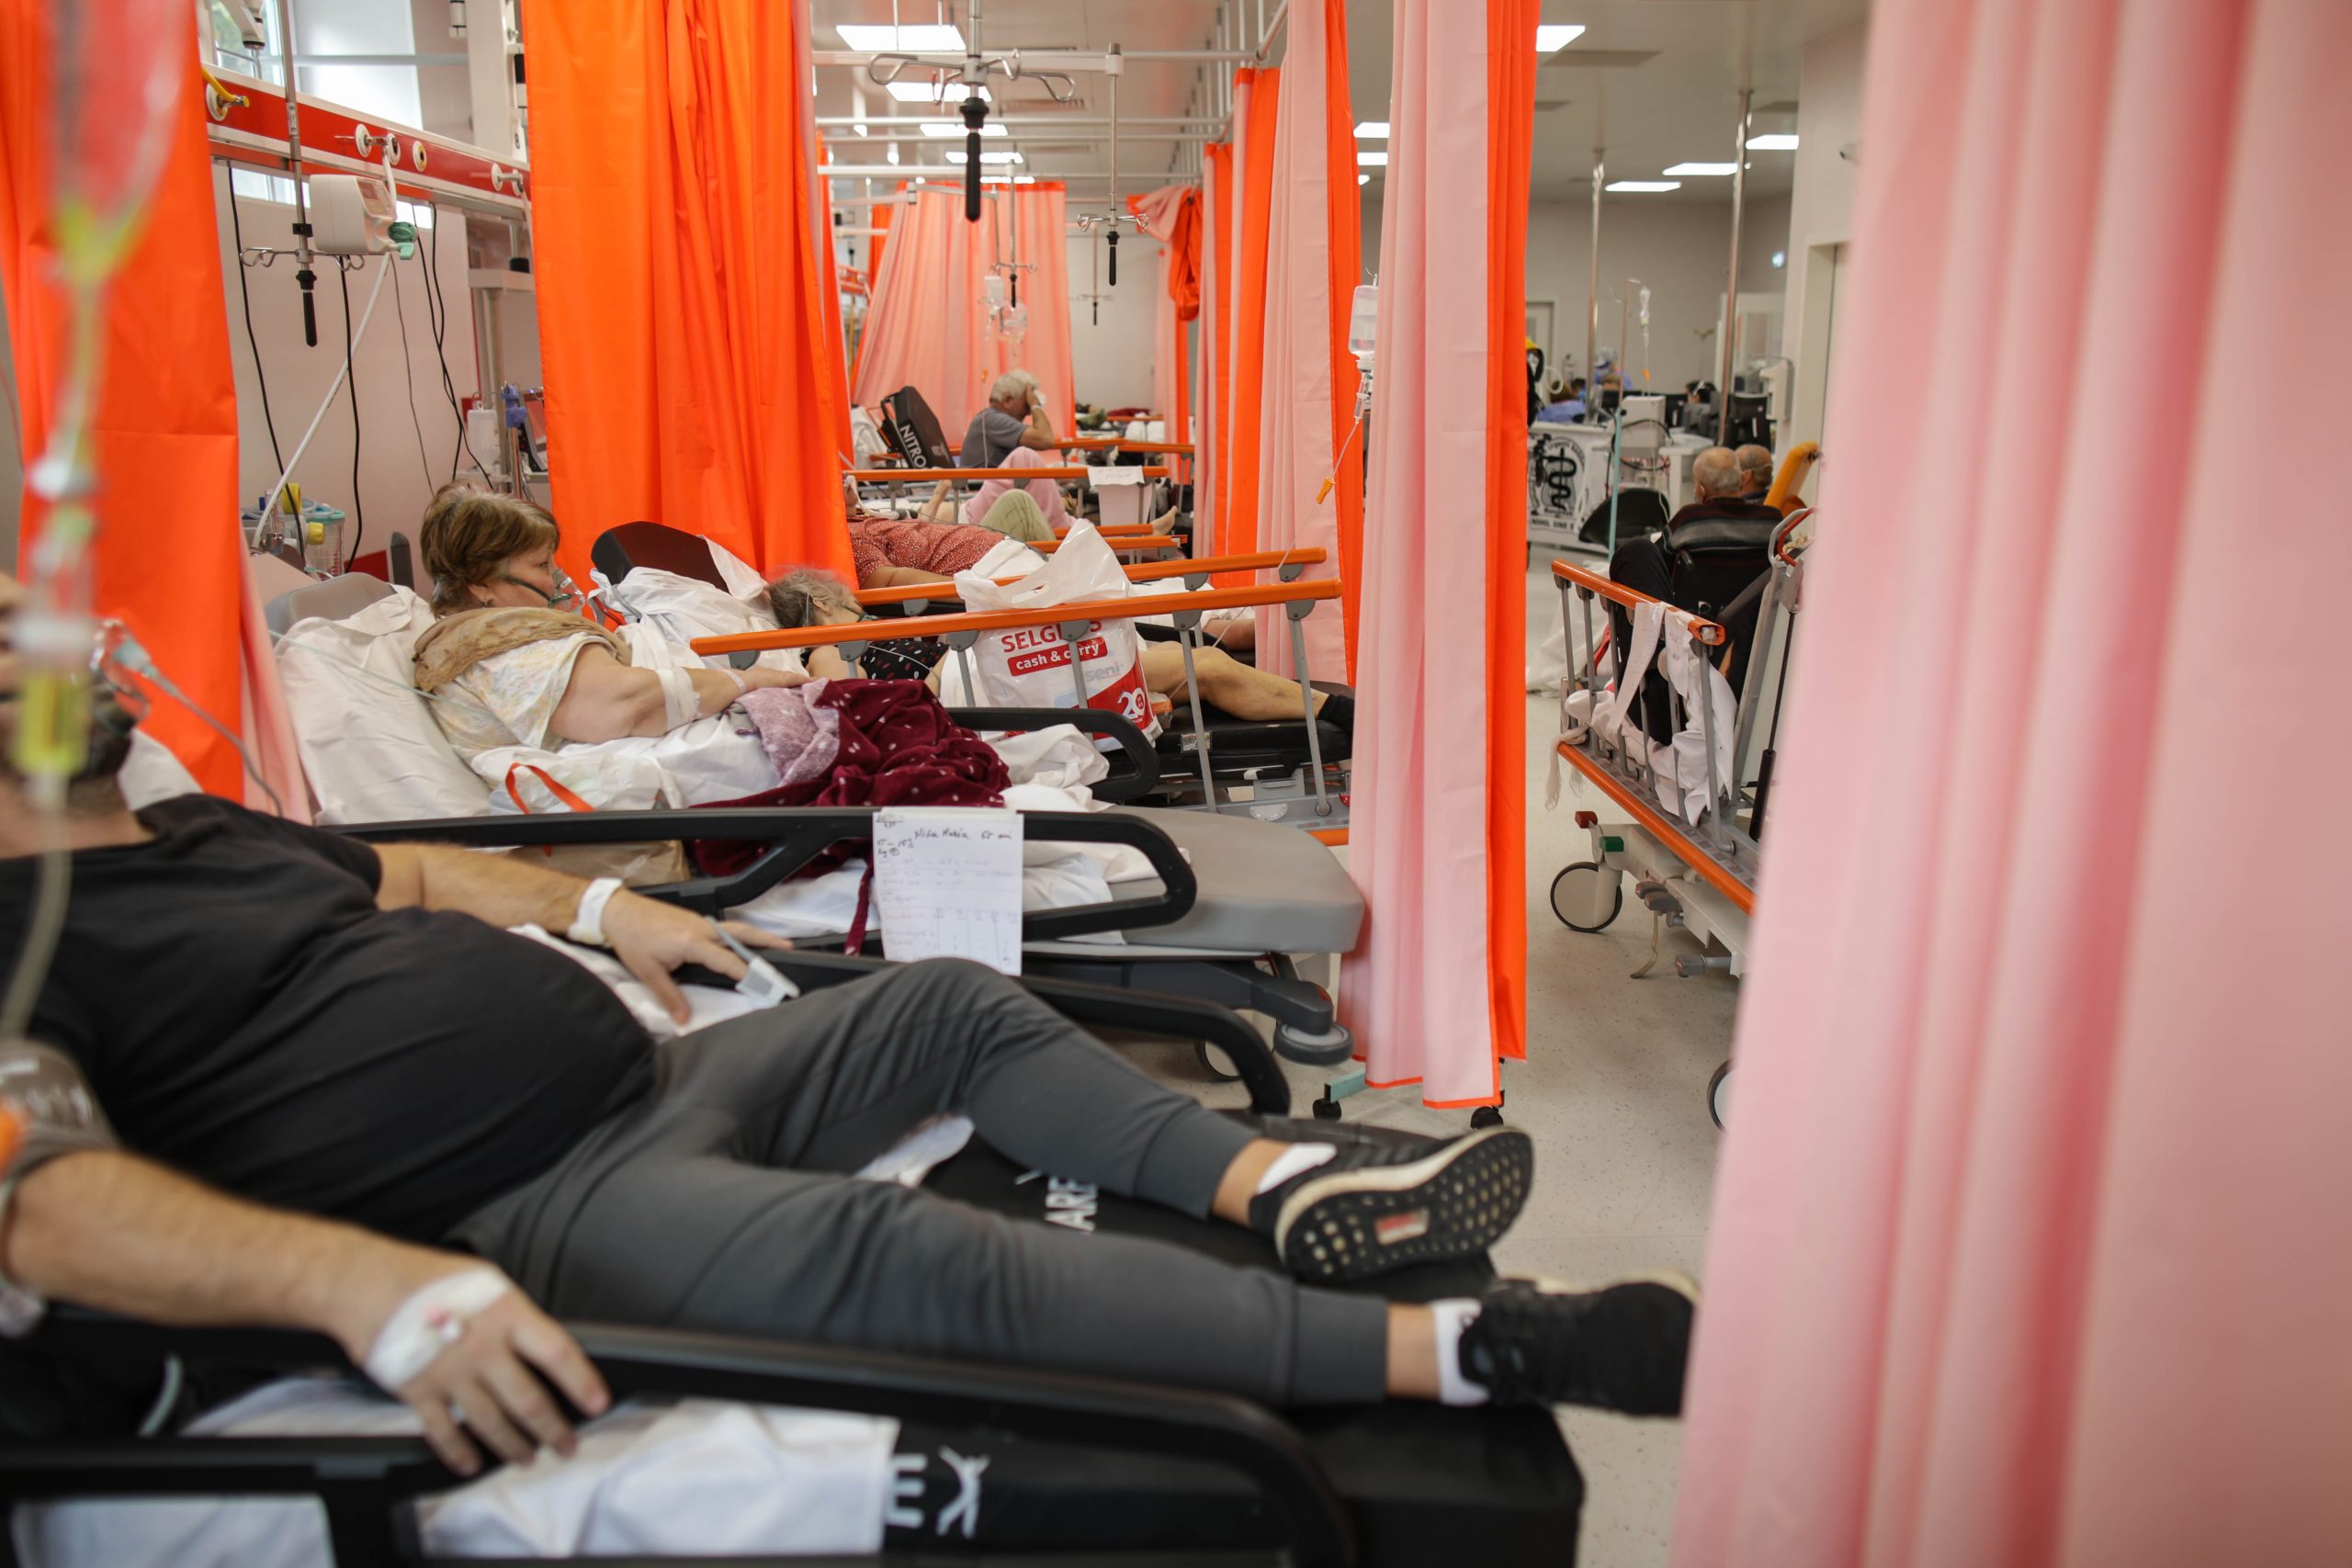 Spitalului Județean Târgu Jiu: Toate paturile destinate pacienților Covid-19 sunt ocupate